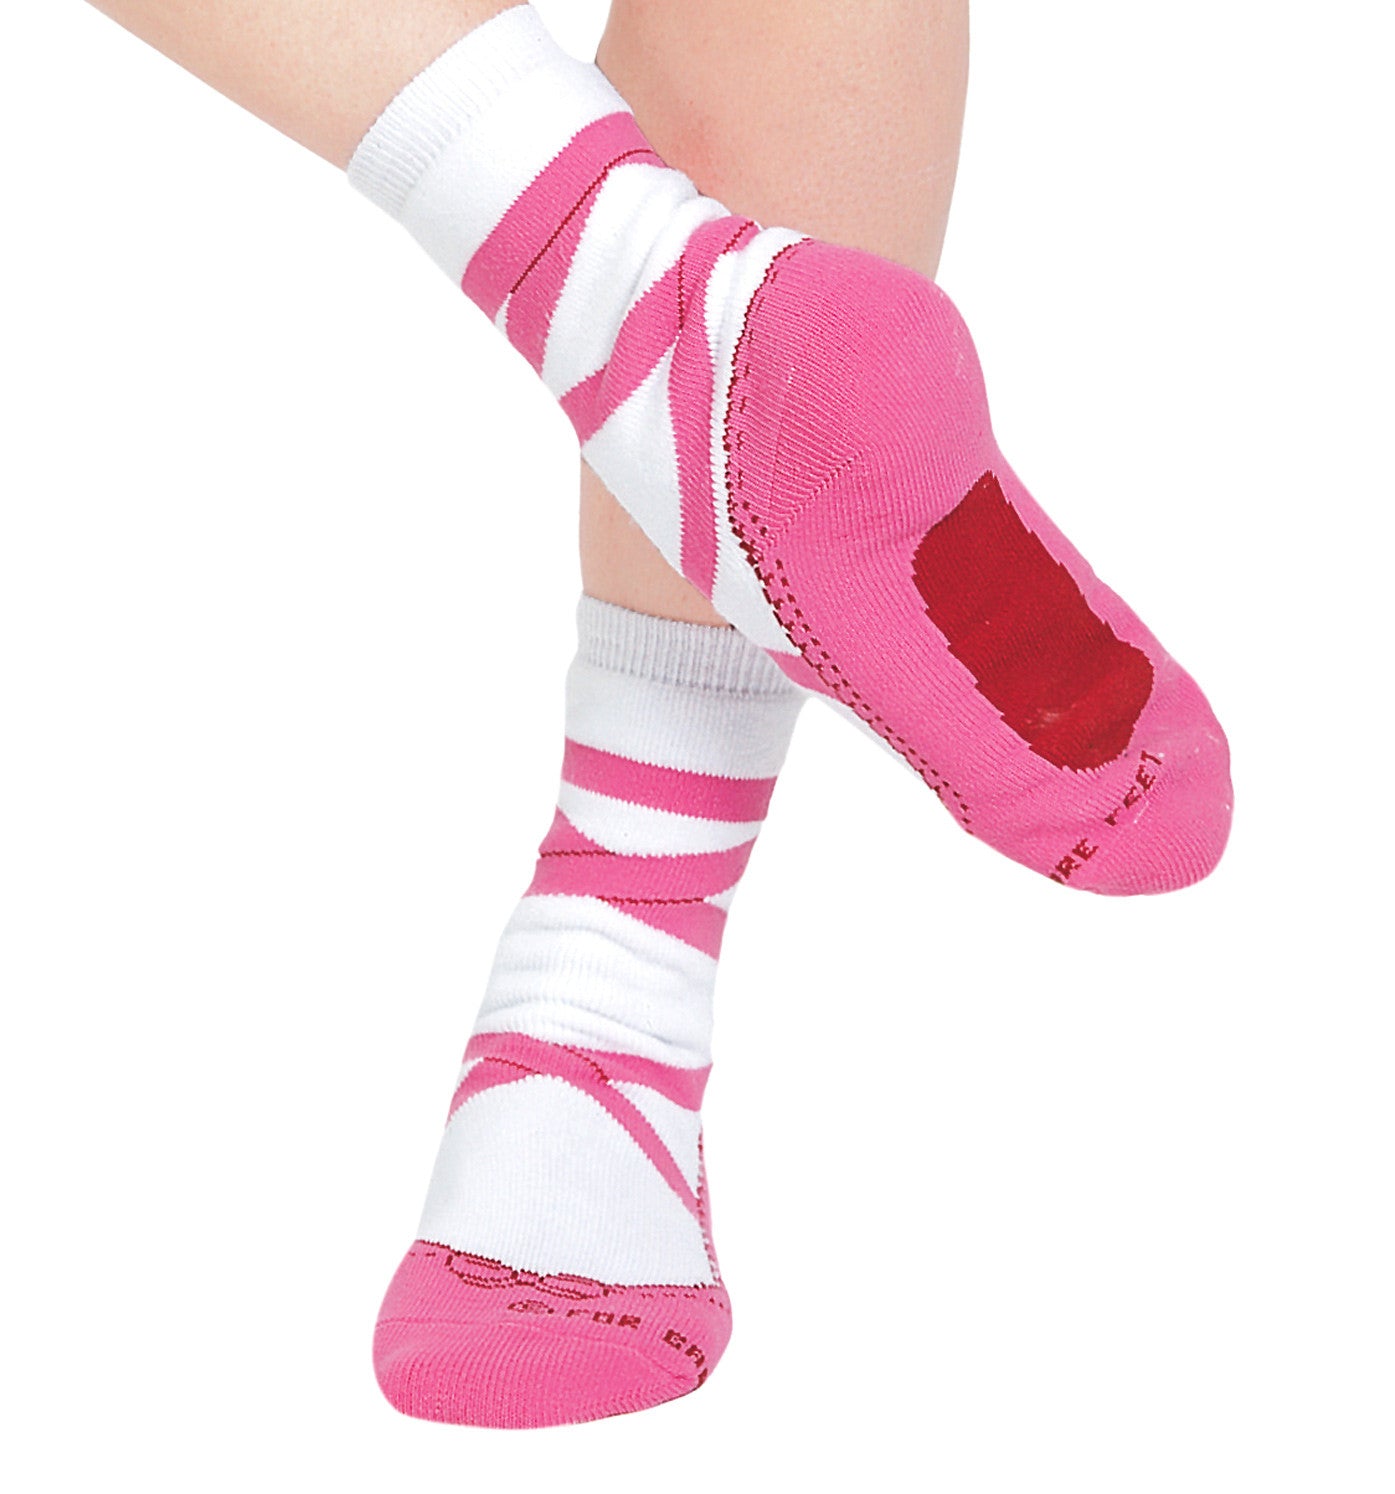 For Bare Feet Pointe Shoe Socks for Women